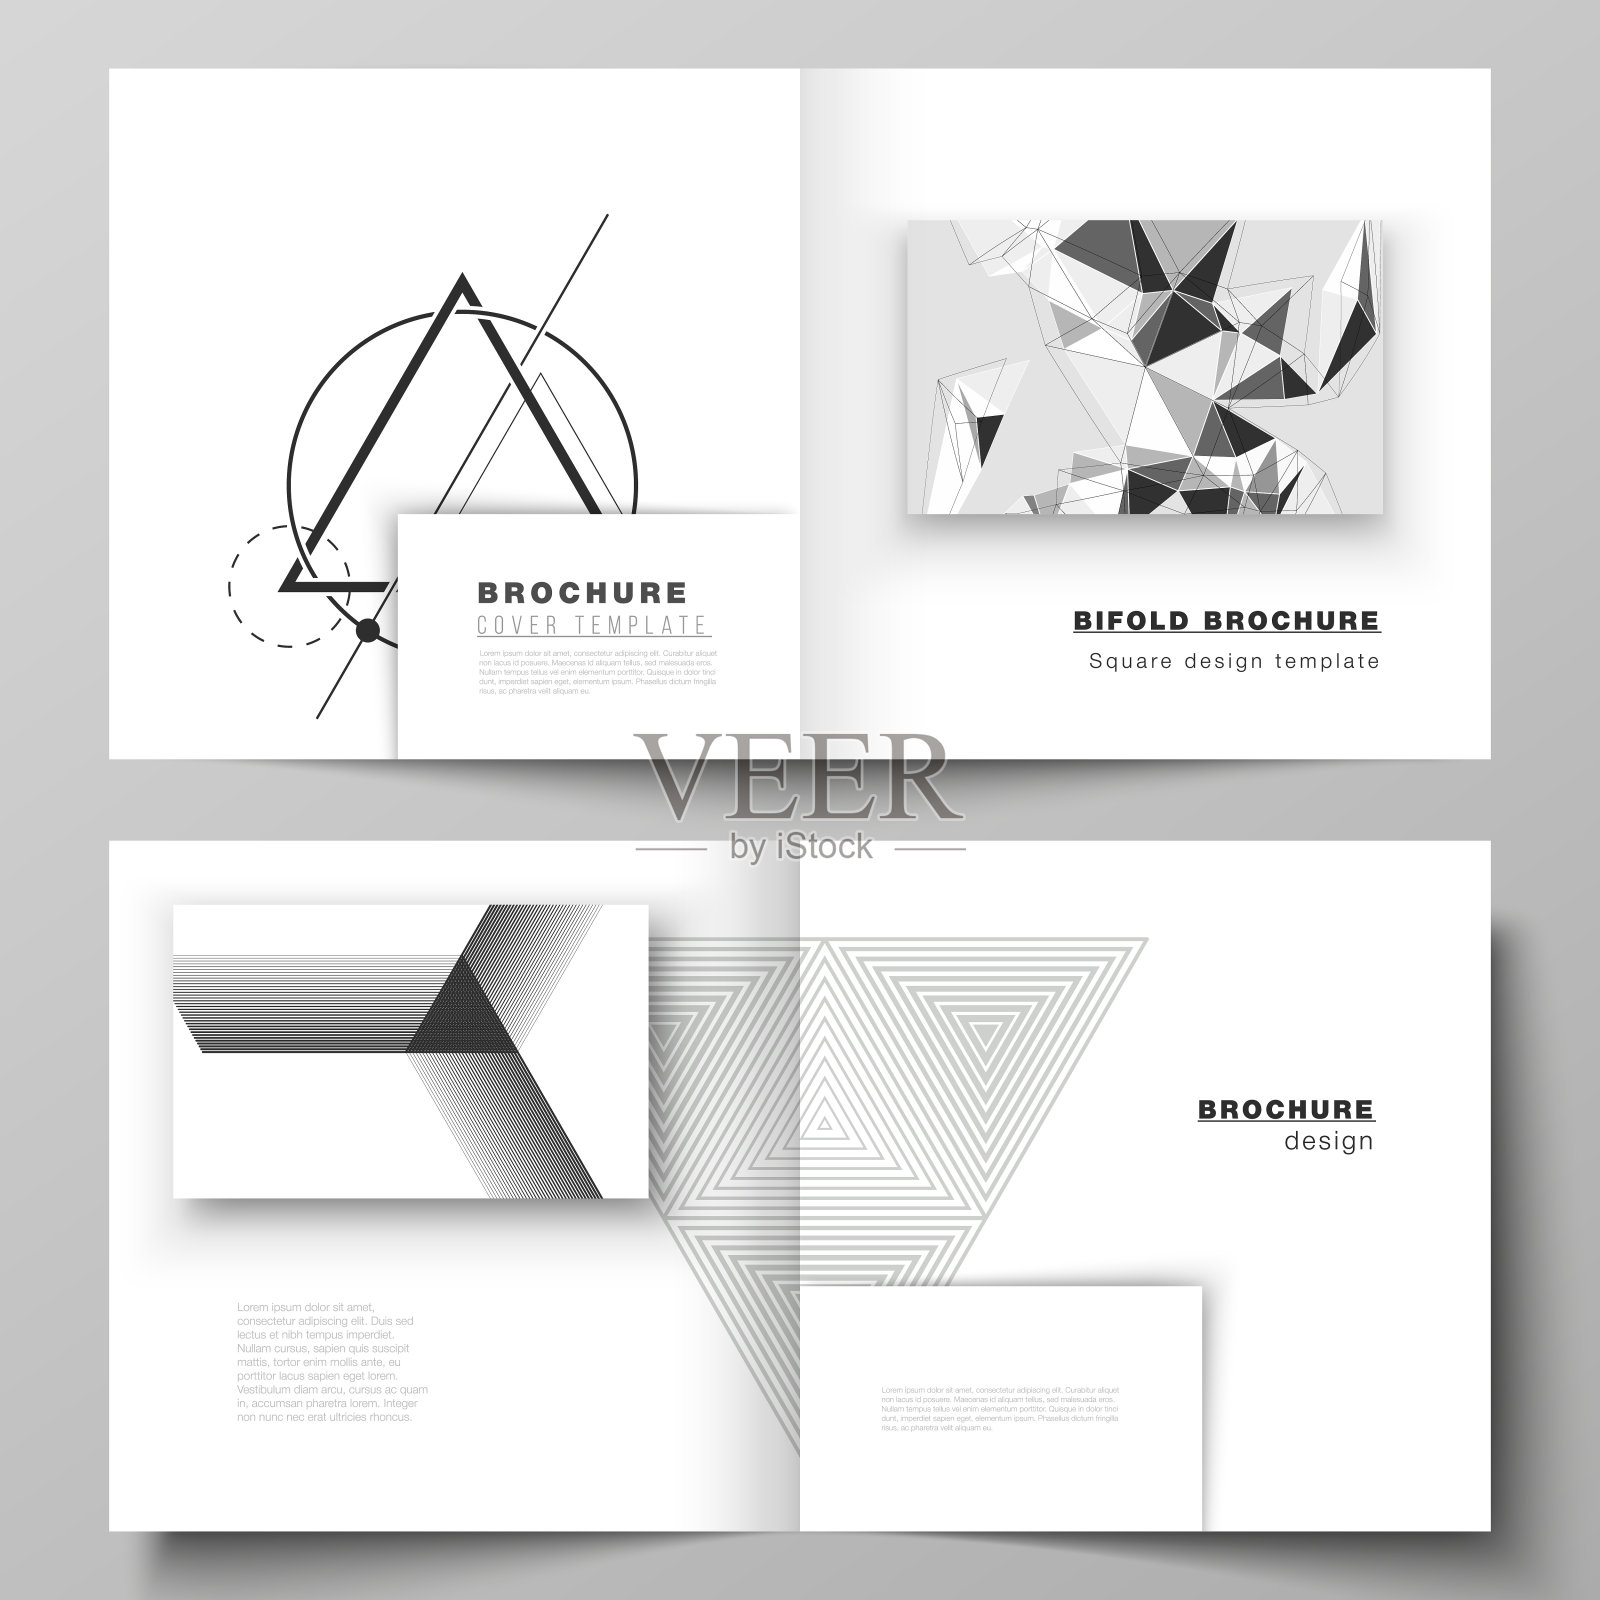 矢量布局的两个封面模板为方形设计双折宣传册，杂志，传单，小册子。抽象几何三角形设计背景采用不同的三角形风格图案。设计模板素材